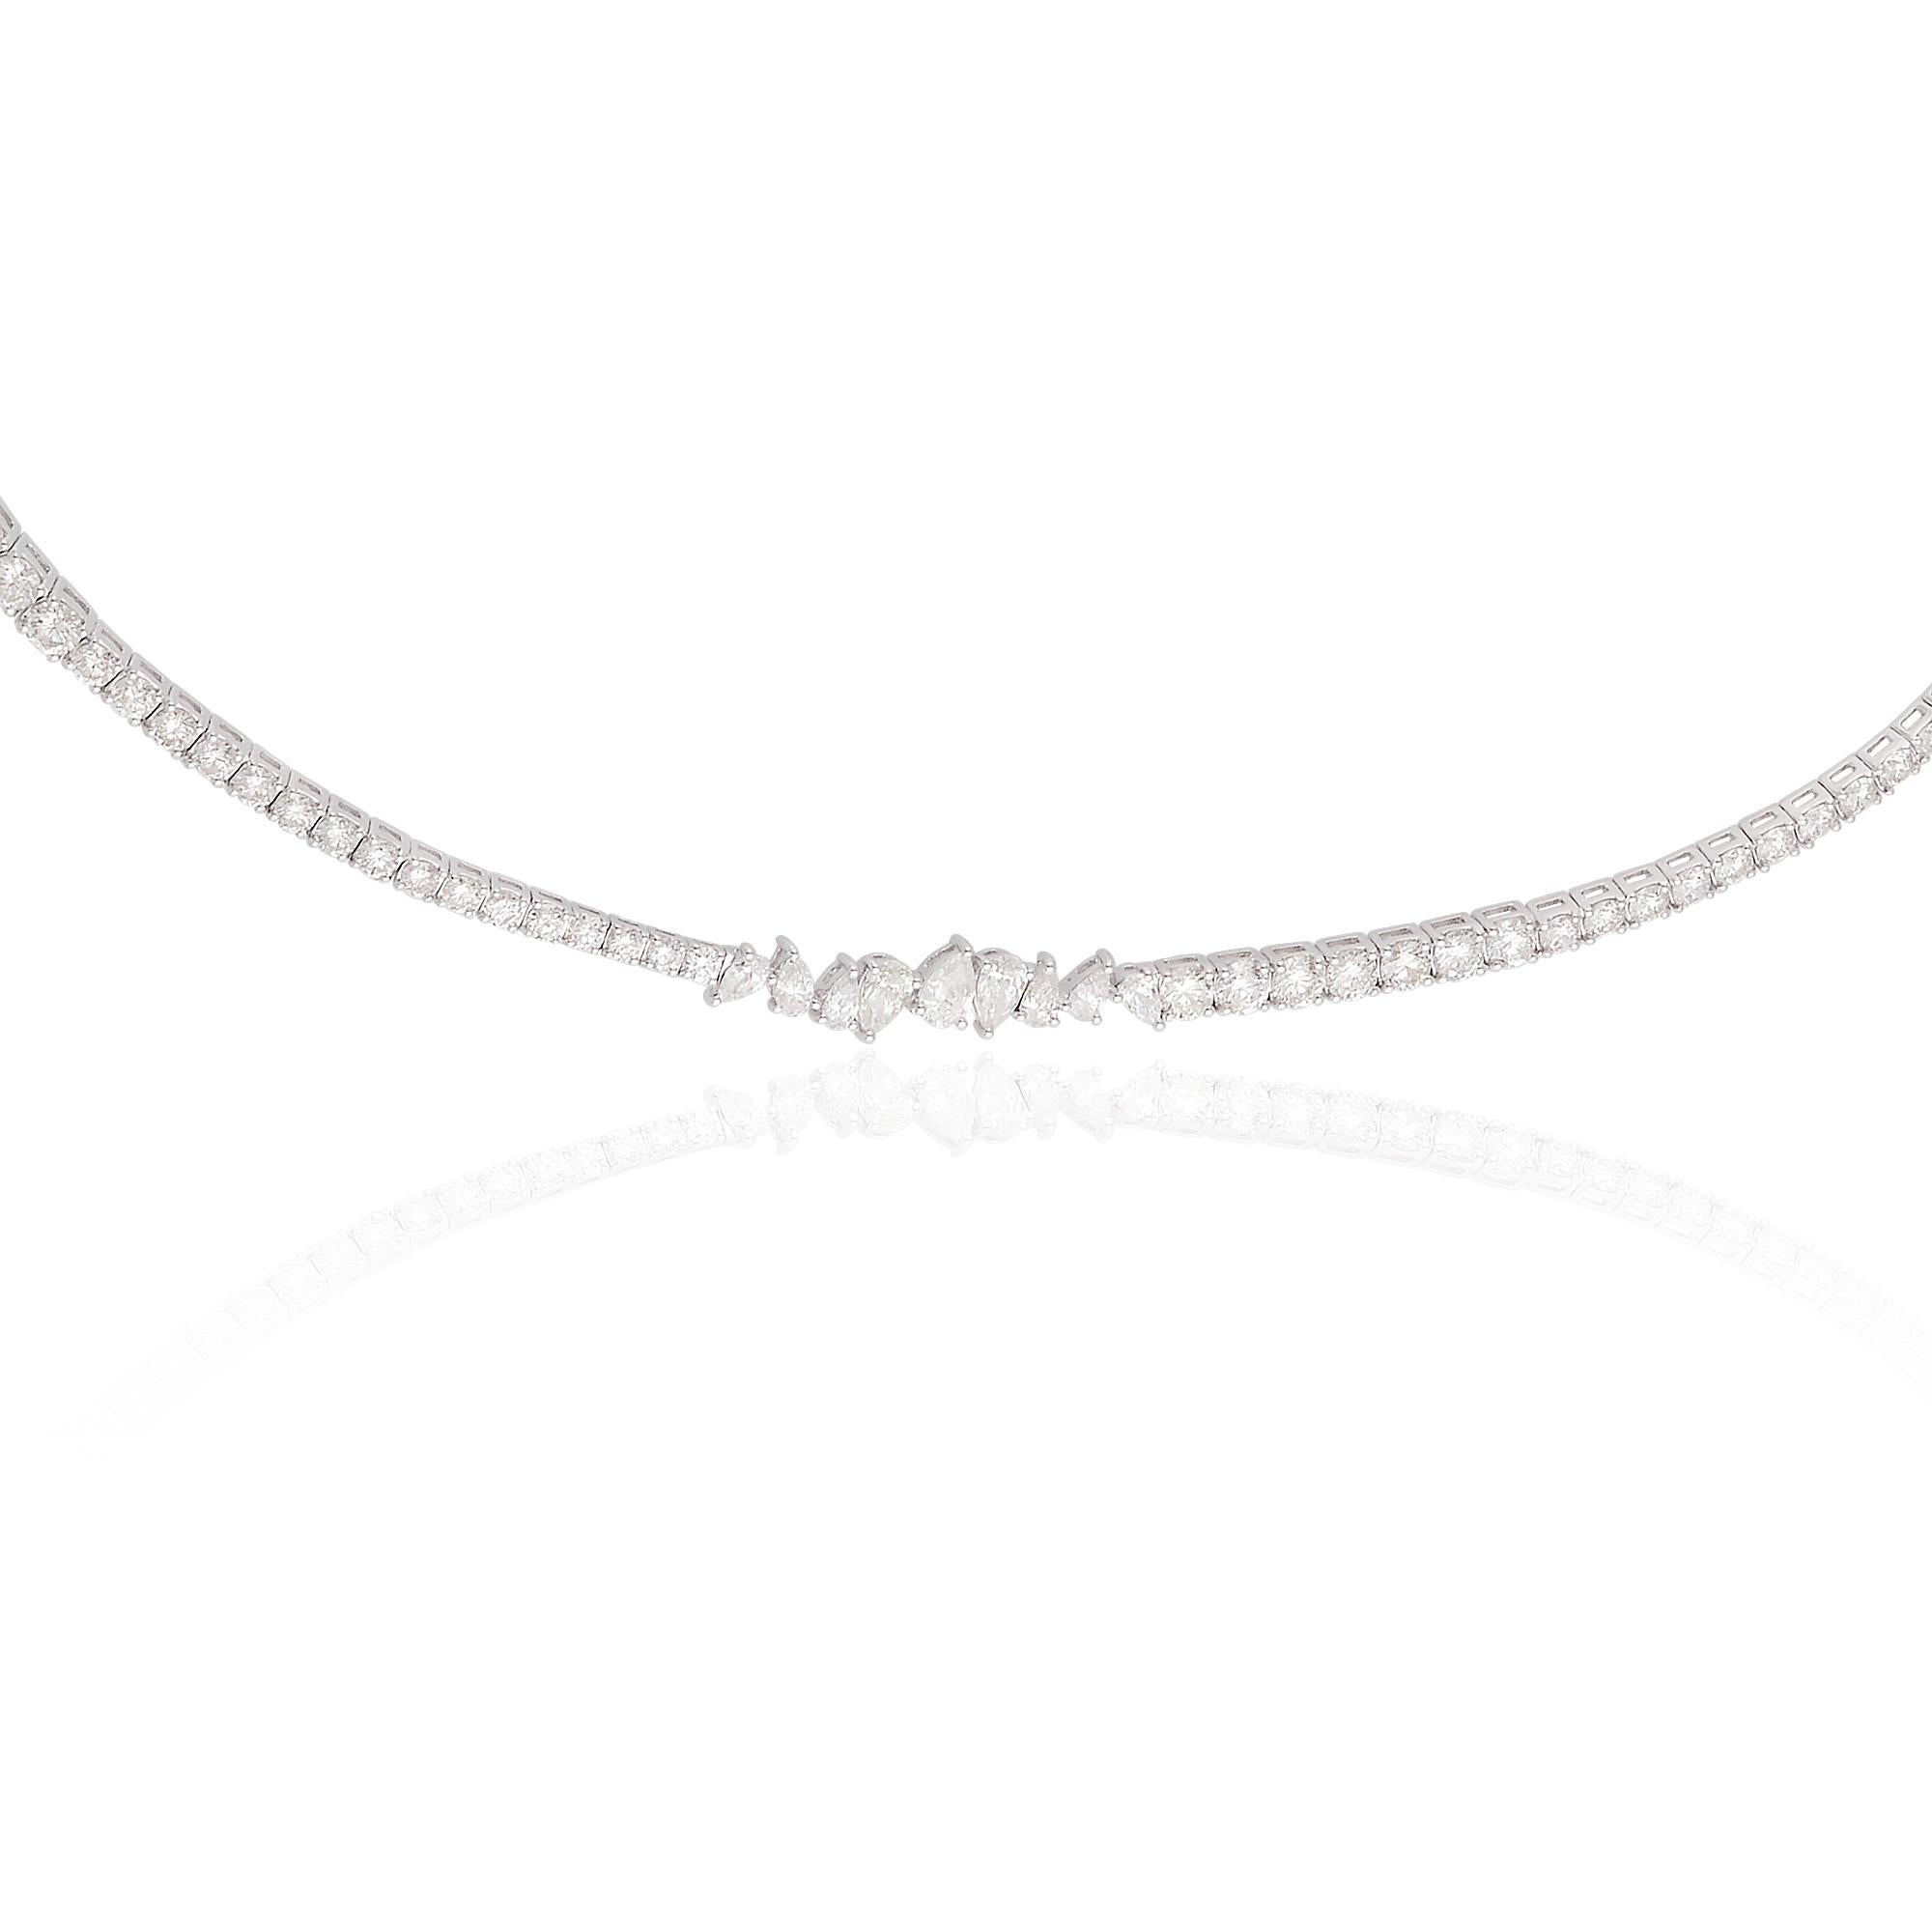 Dieses diamantene Halsband ist ein wahres Kunstwerk, das die zeitlose Schönheit und Eleganz von Diamanten unterstreicht. Ob allein oder in Kombination mit anderen Halsketten getragen, sie wird garantiert einen bleibenden Eindruck hinterlassen. Seine